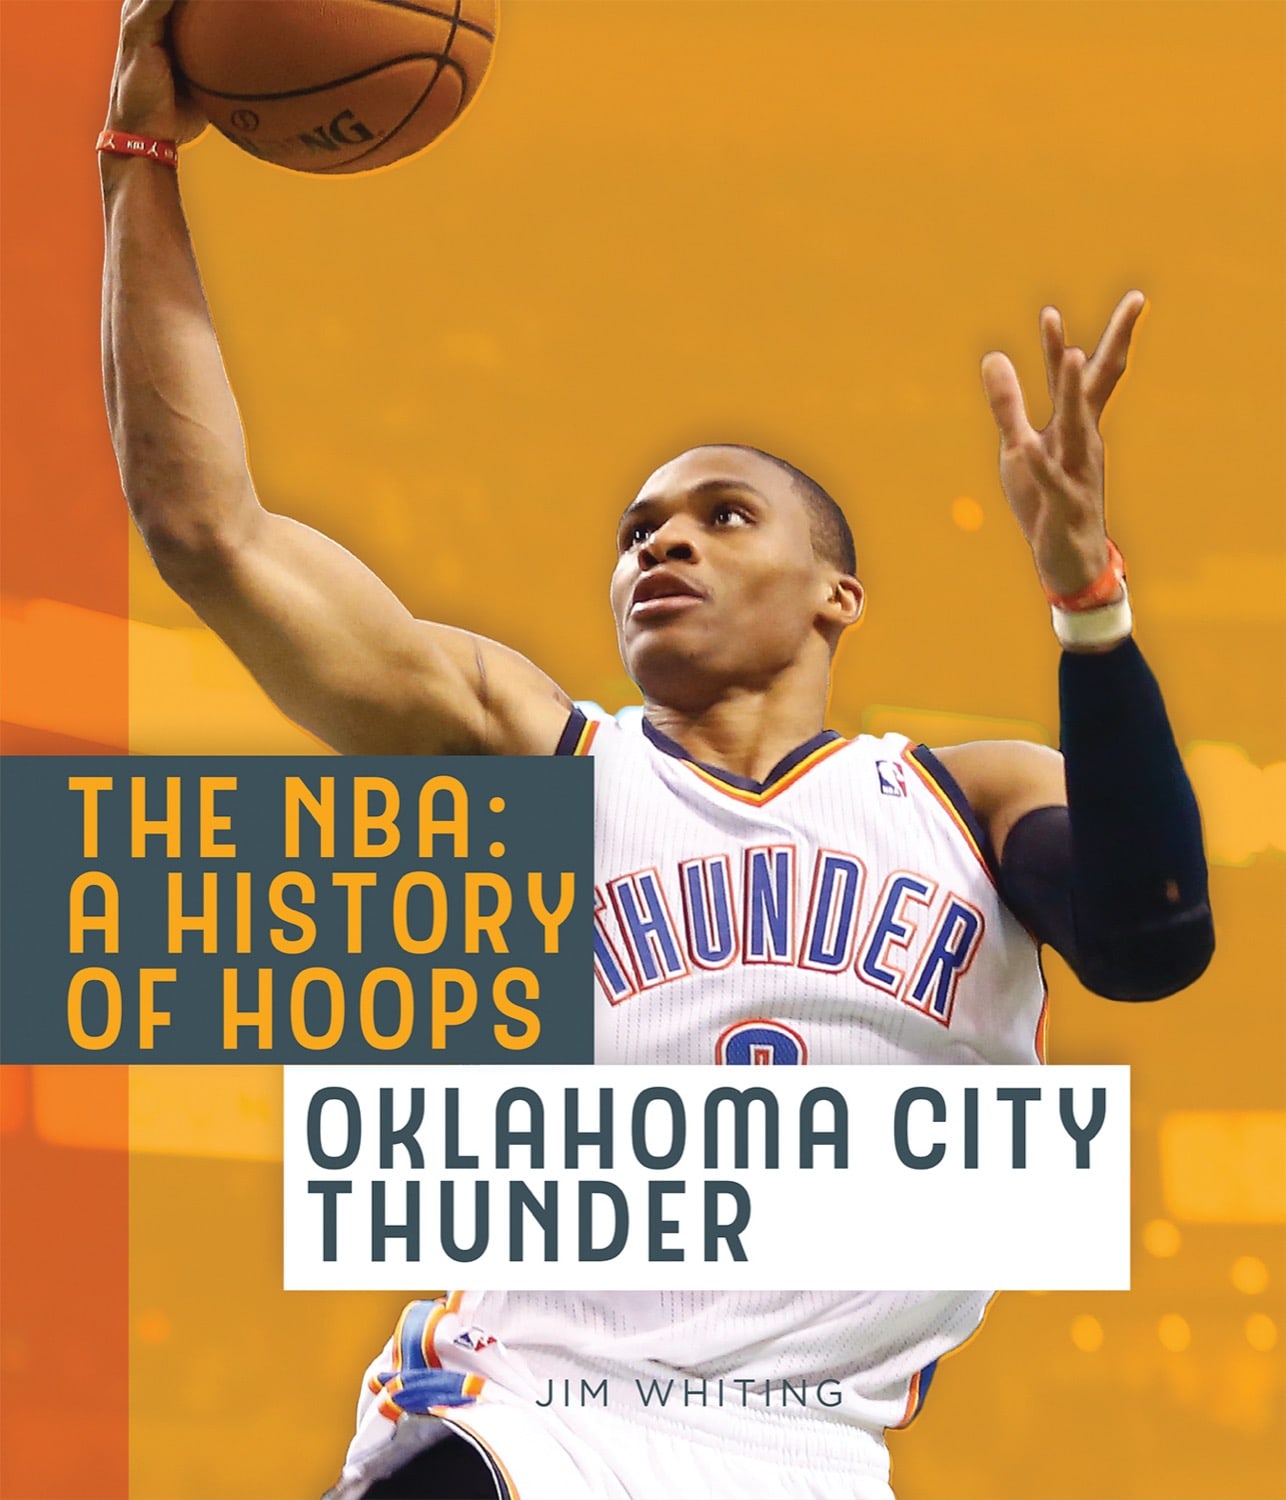 Oklahoma City Thunder Jersey History